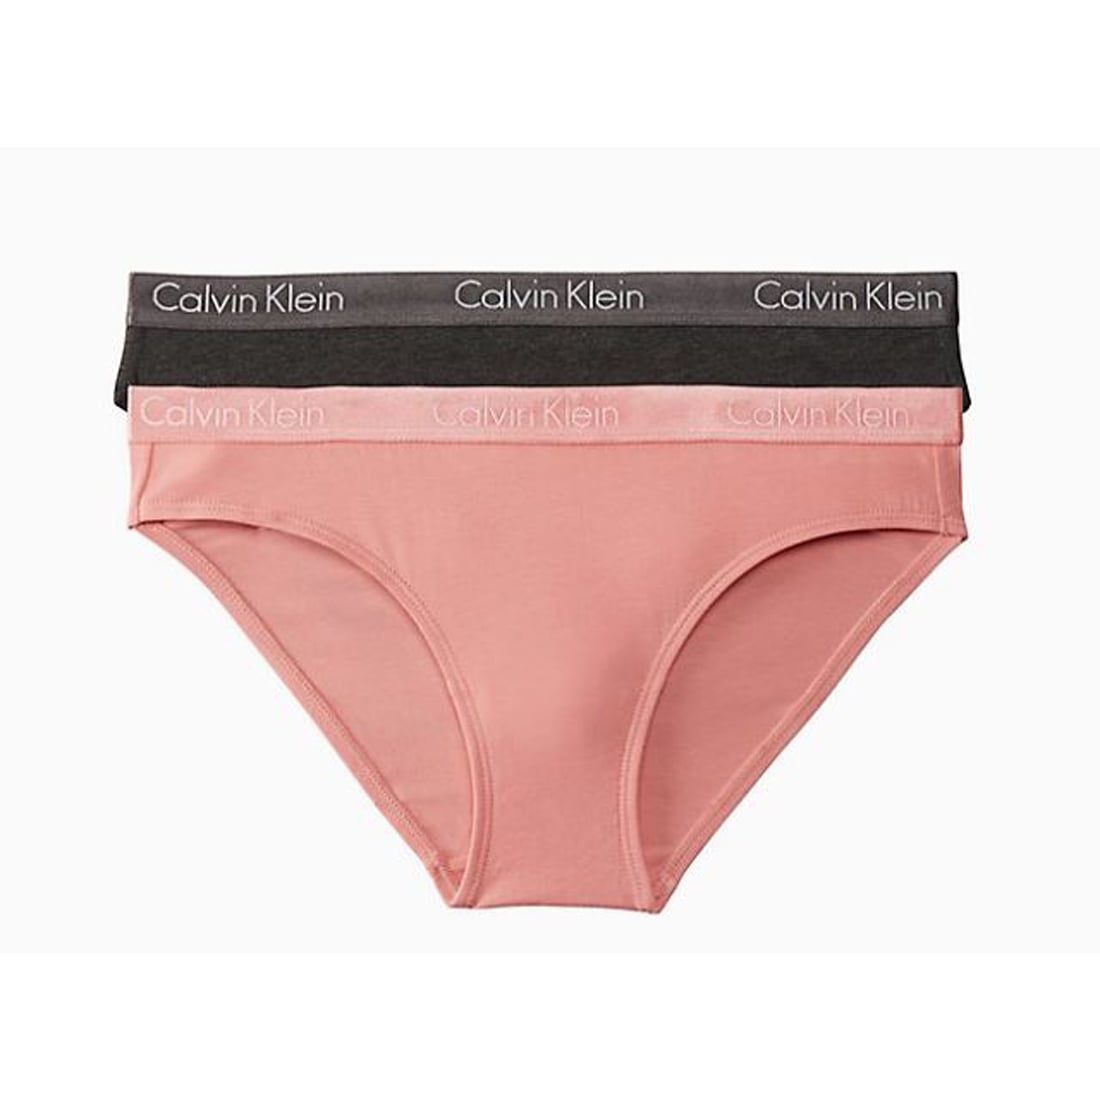 Calvin Klein Bikini Set Pack of 2, Pink/Grey, Medium